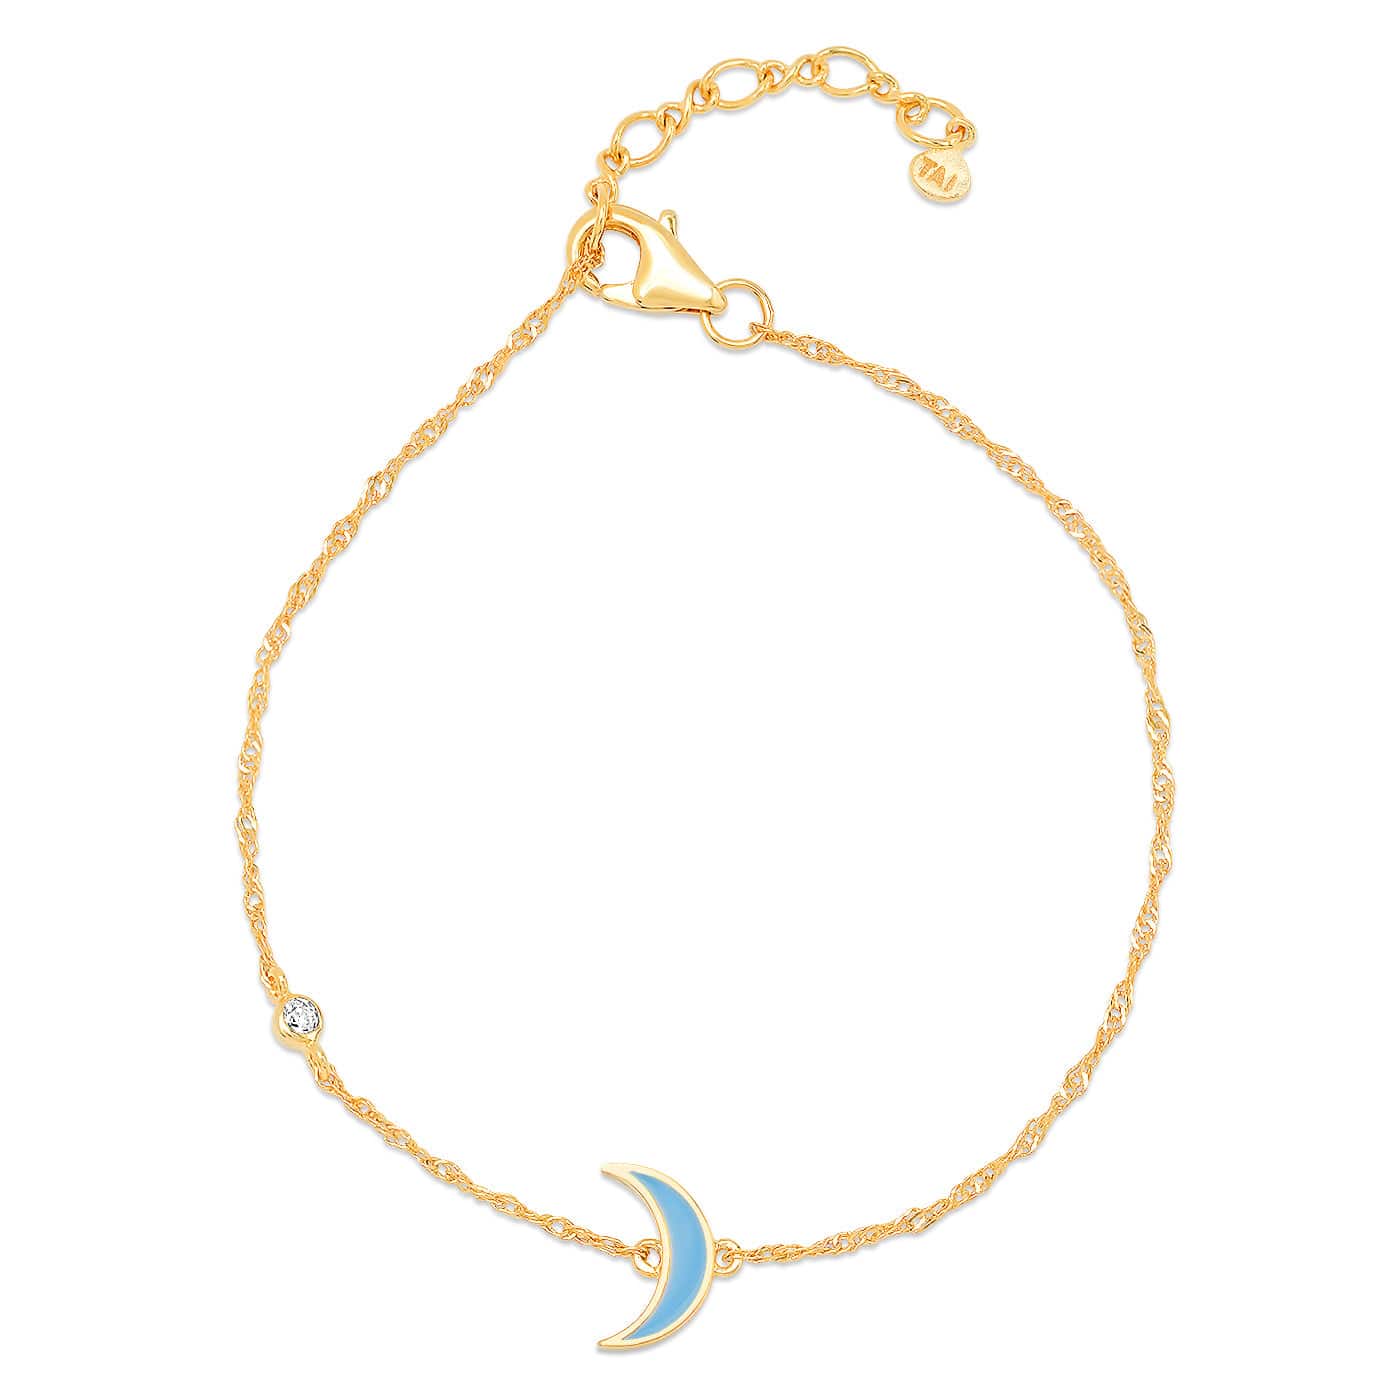 TAI JEWELRY Bracelet Moon Moon Enamel Charm Chain Bracelet